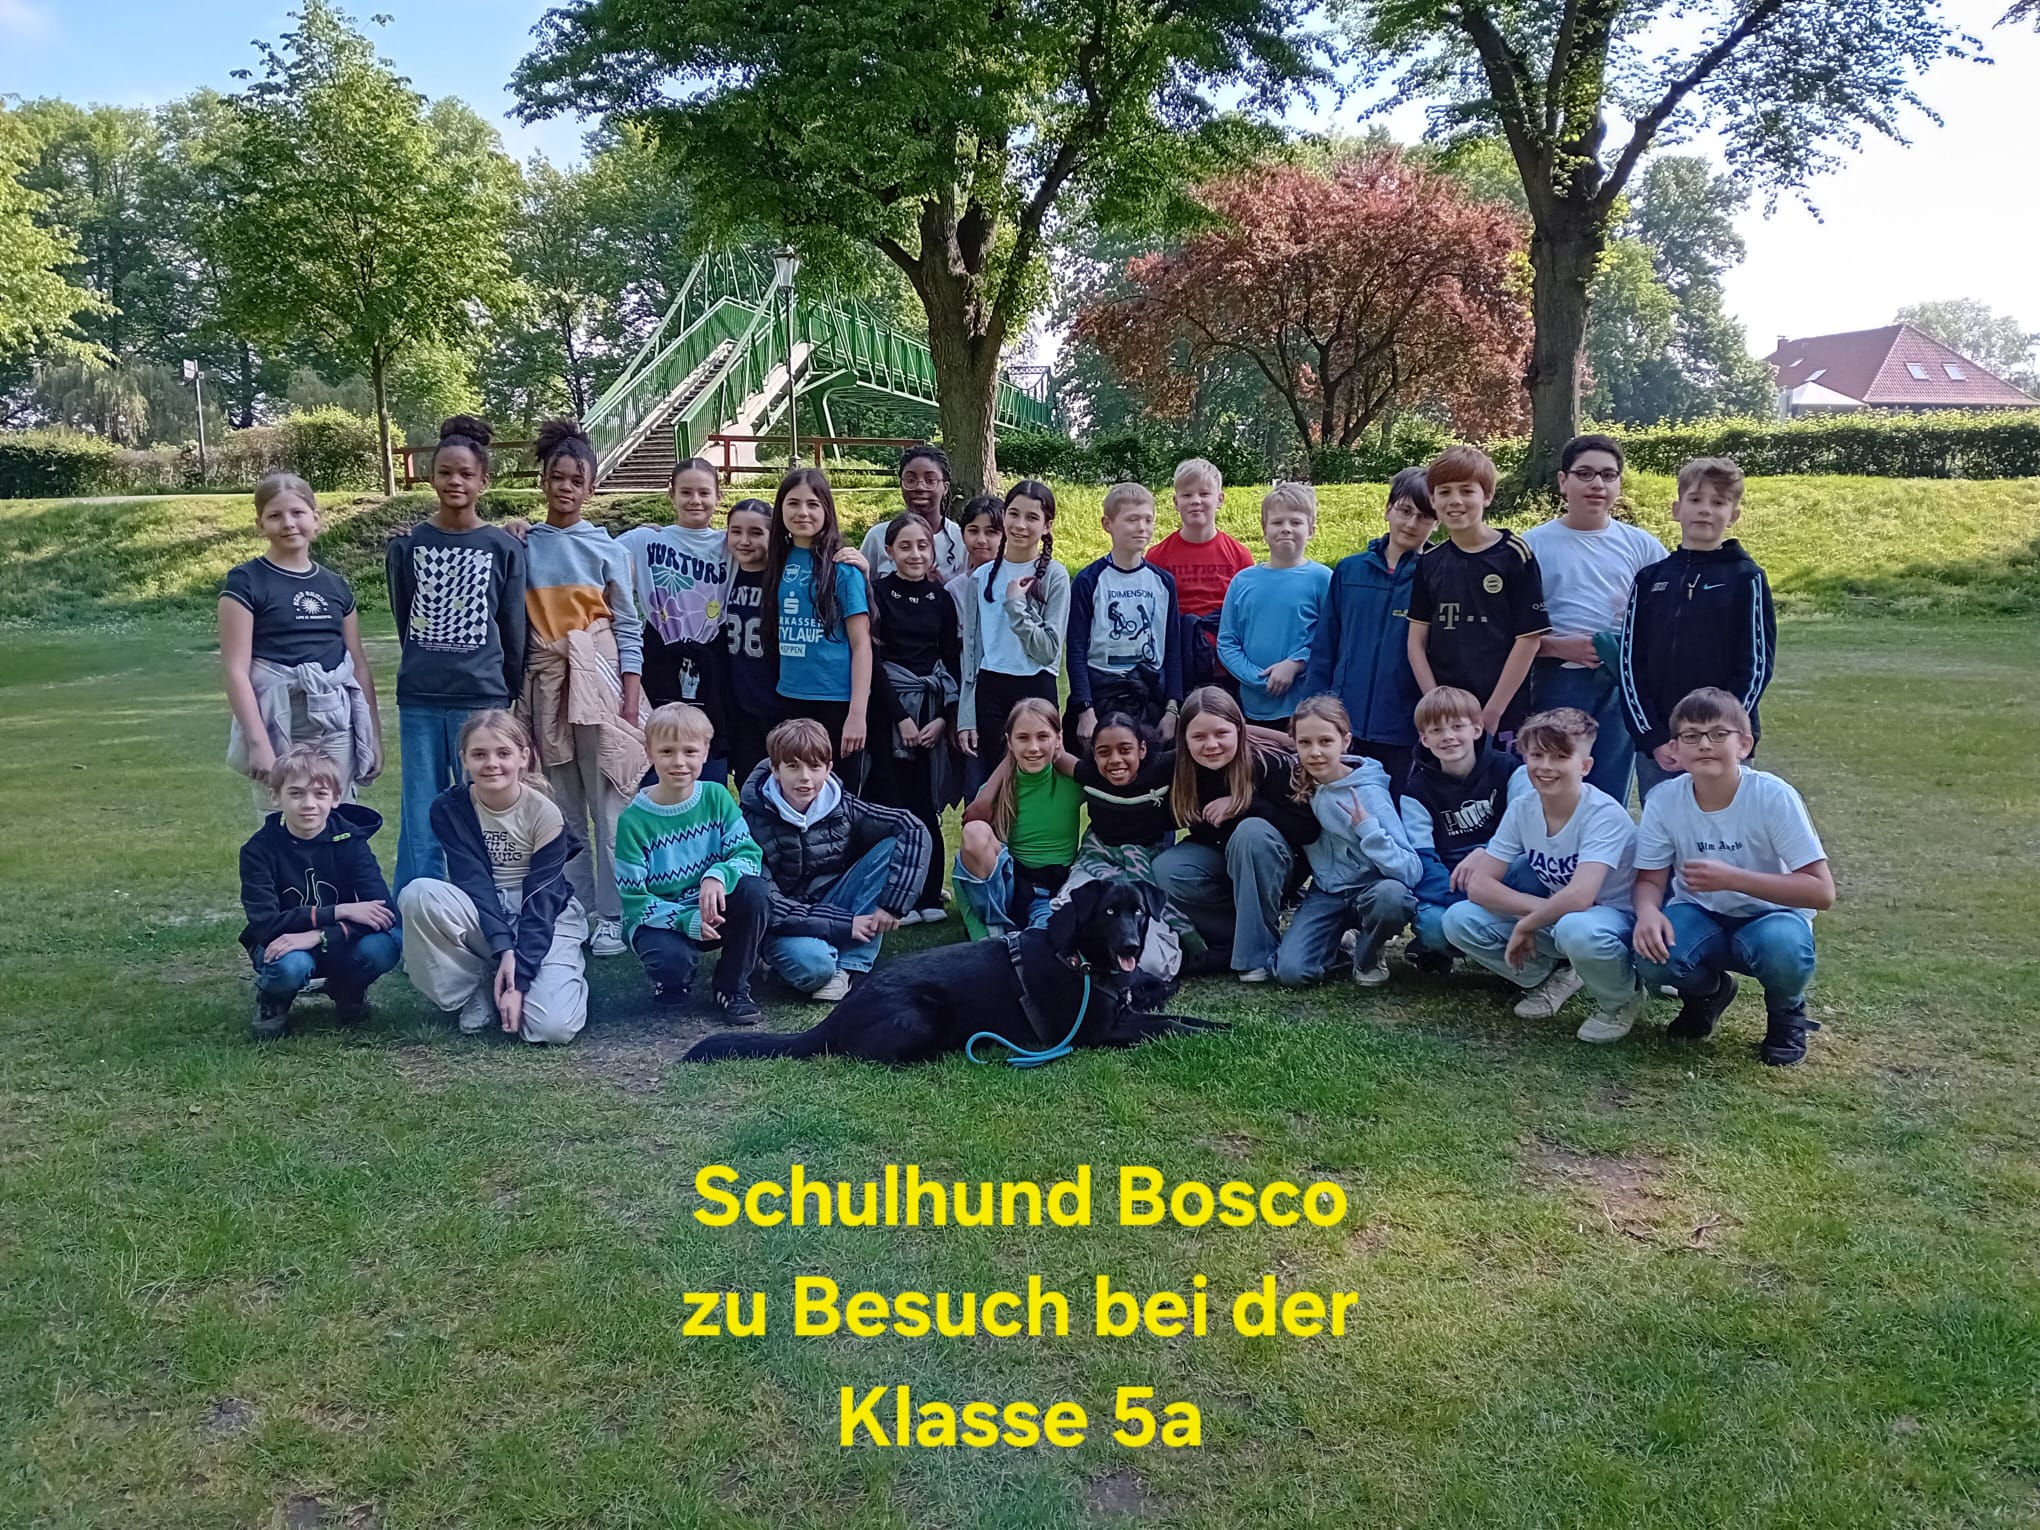 Mehr über den Artikel erfahren Willkommenstag für Schulhund Bosco